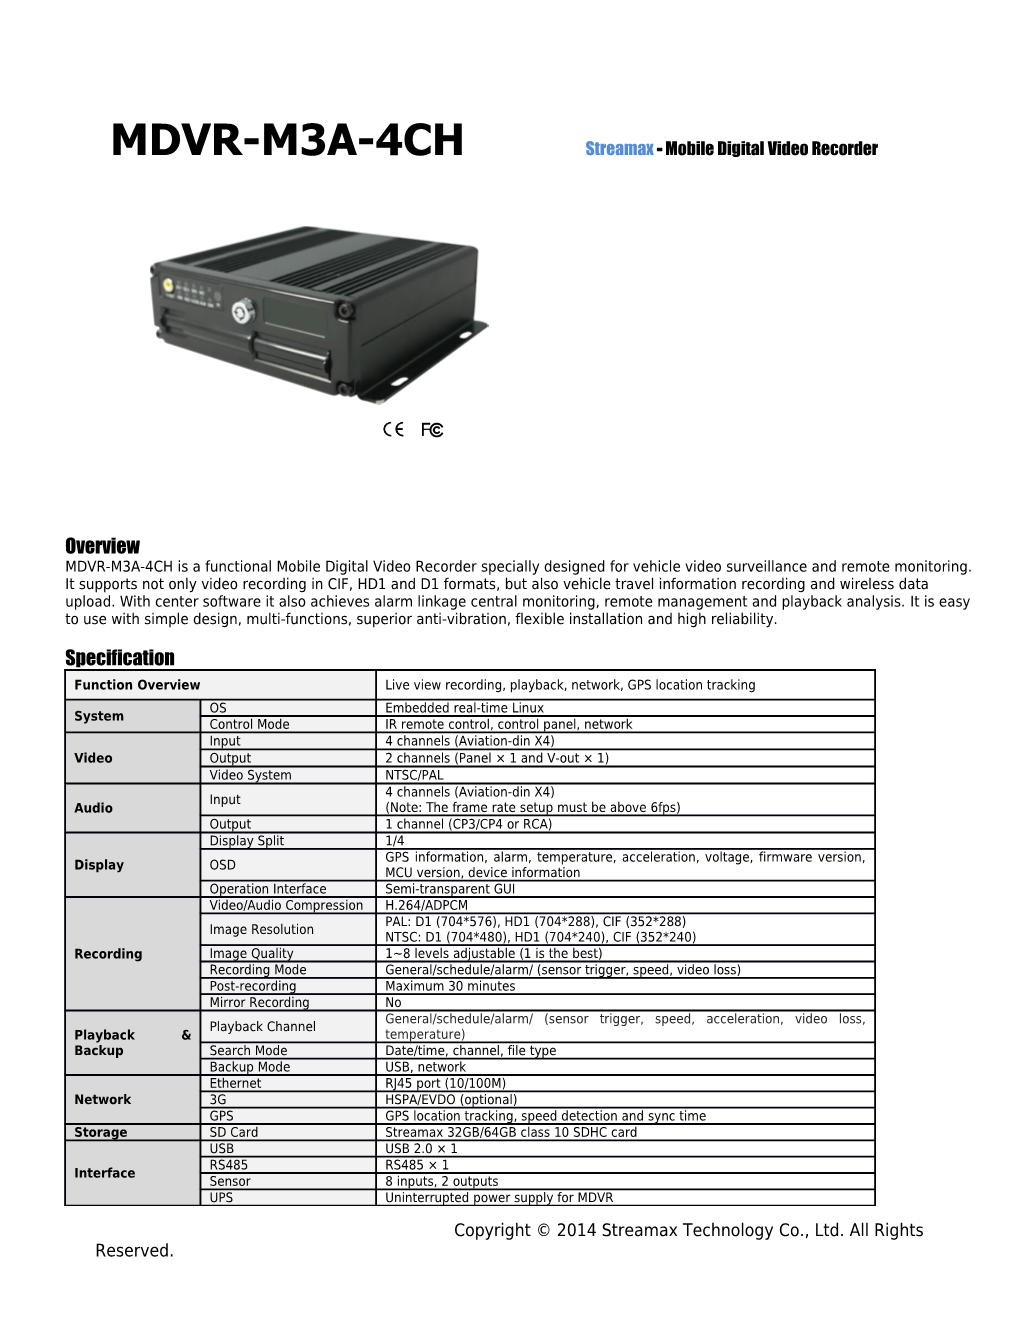 MDVR-X11-4 Embedded/Mobile Digital Recorder